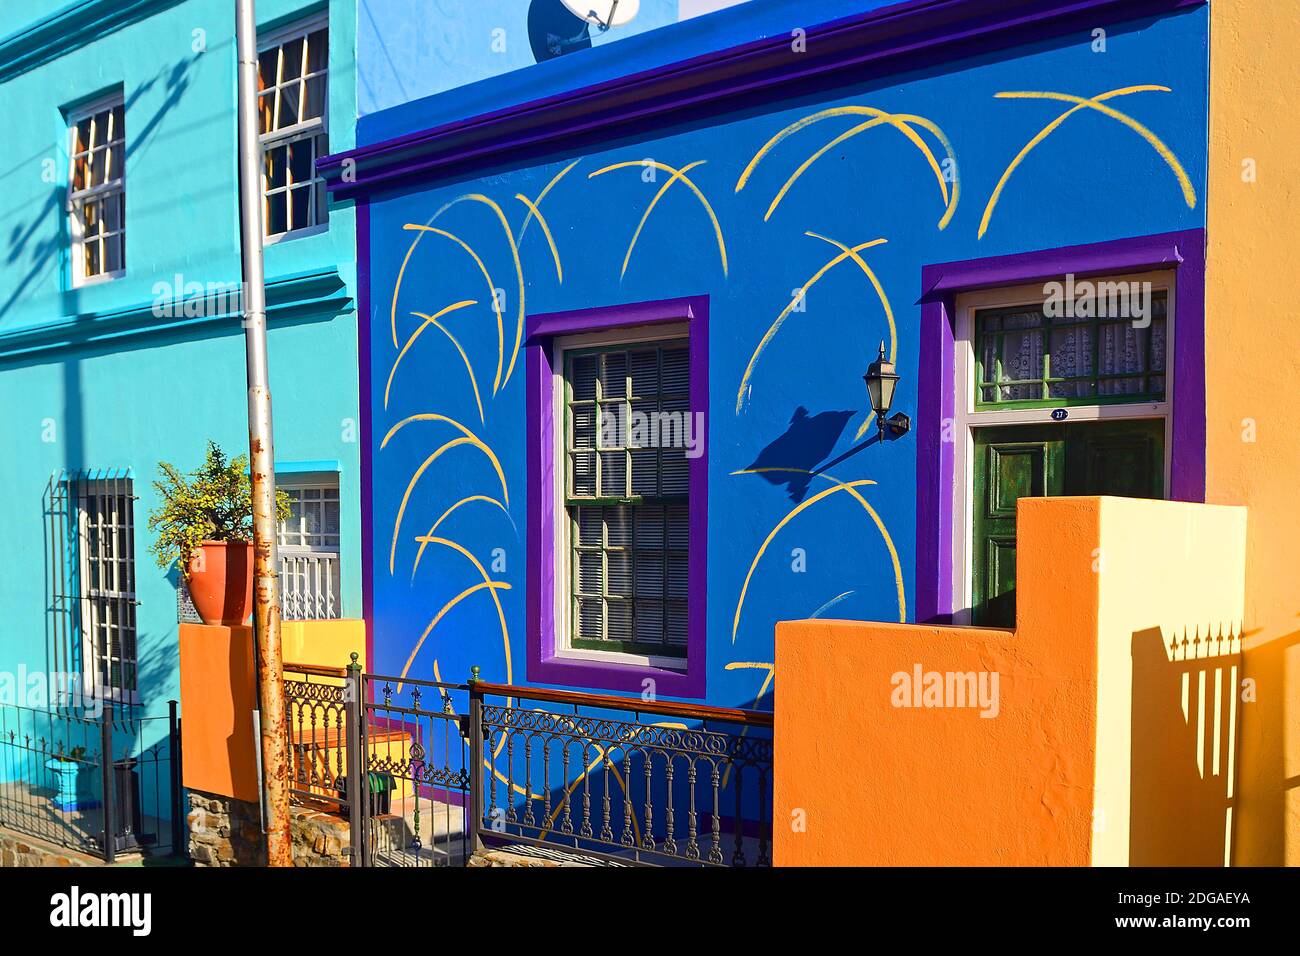 Farbige Häuser in Bo-Kaap, malayisch, moslimisches Viertel, Kapstadt, West Kap, Western Cape, Südafrika, Afrika, Malaienviertel, Banque D'Images